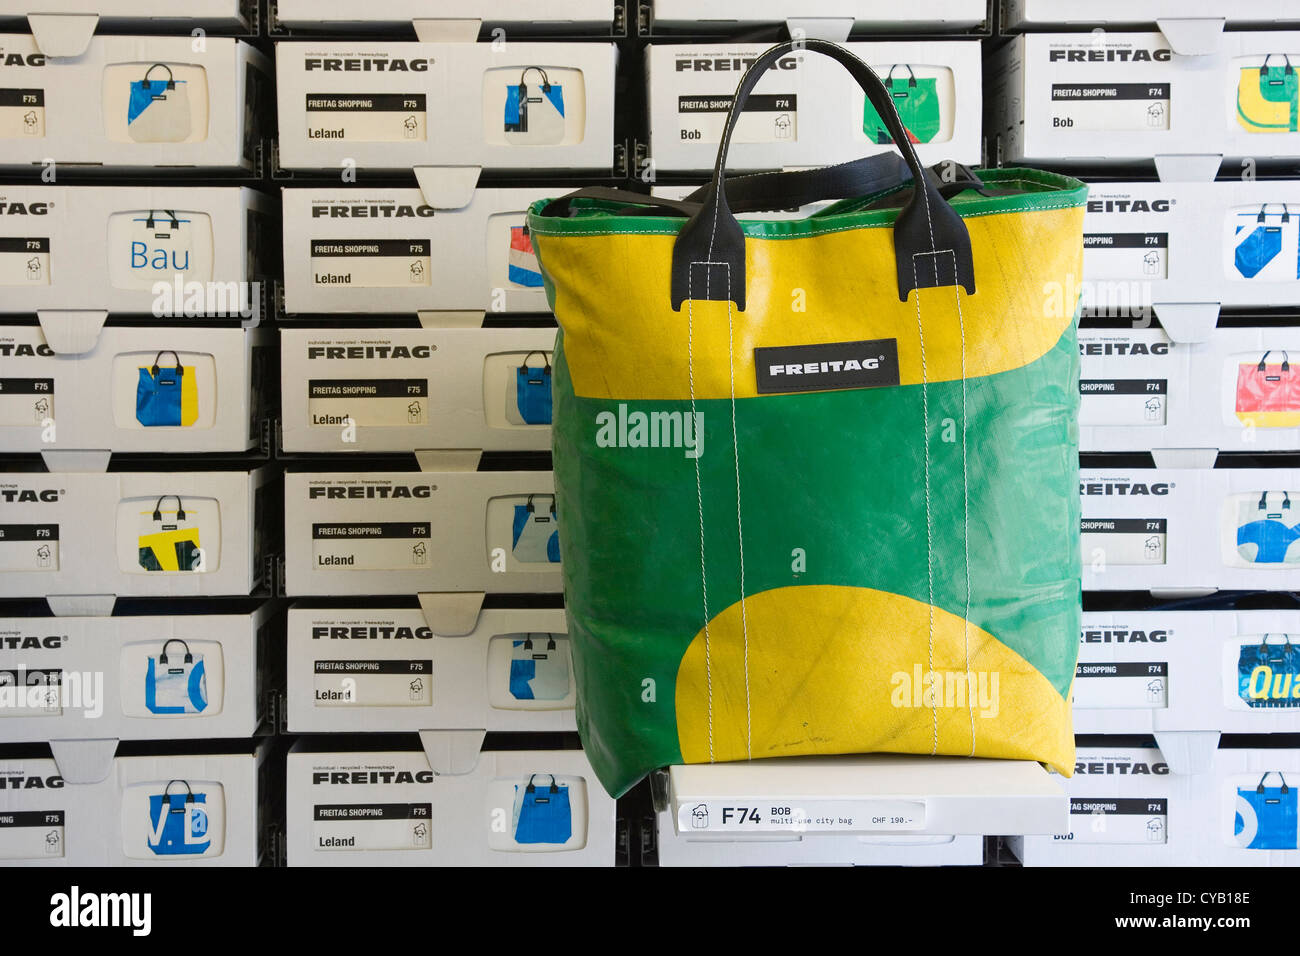 Europa, Schweiz, Zürich, Ffreitag Shop, Taschen aus recycelten Materialien  Stockfotografie - Alamy